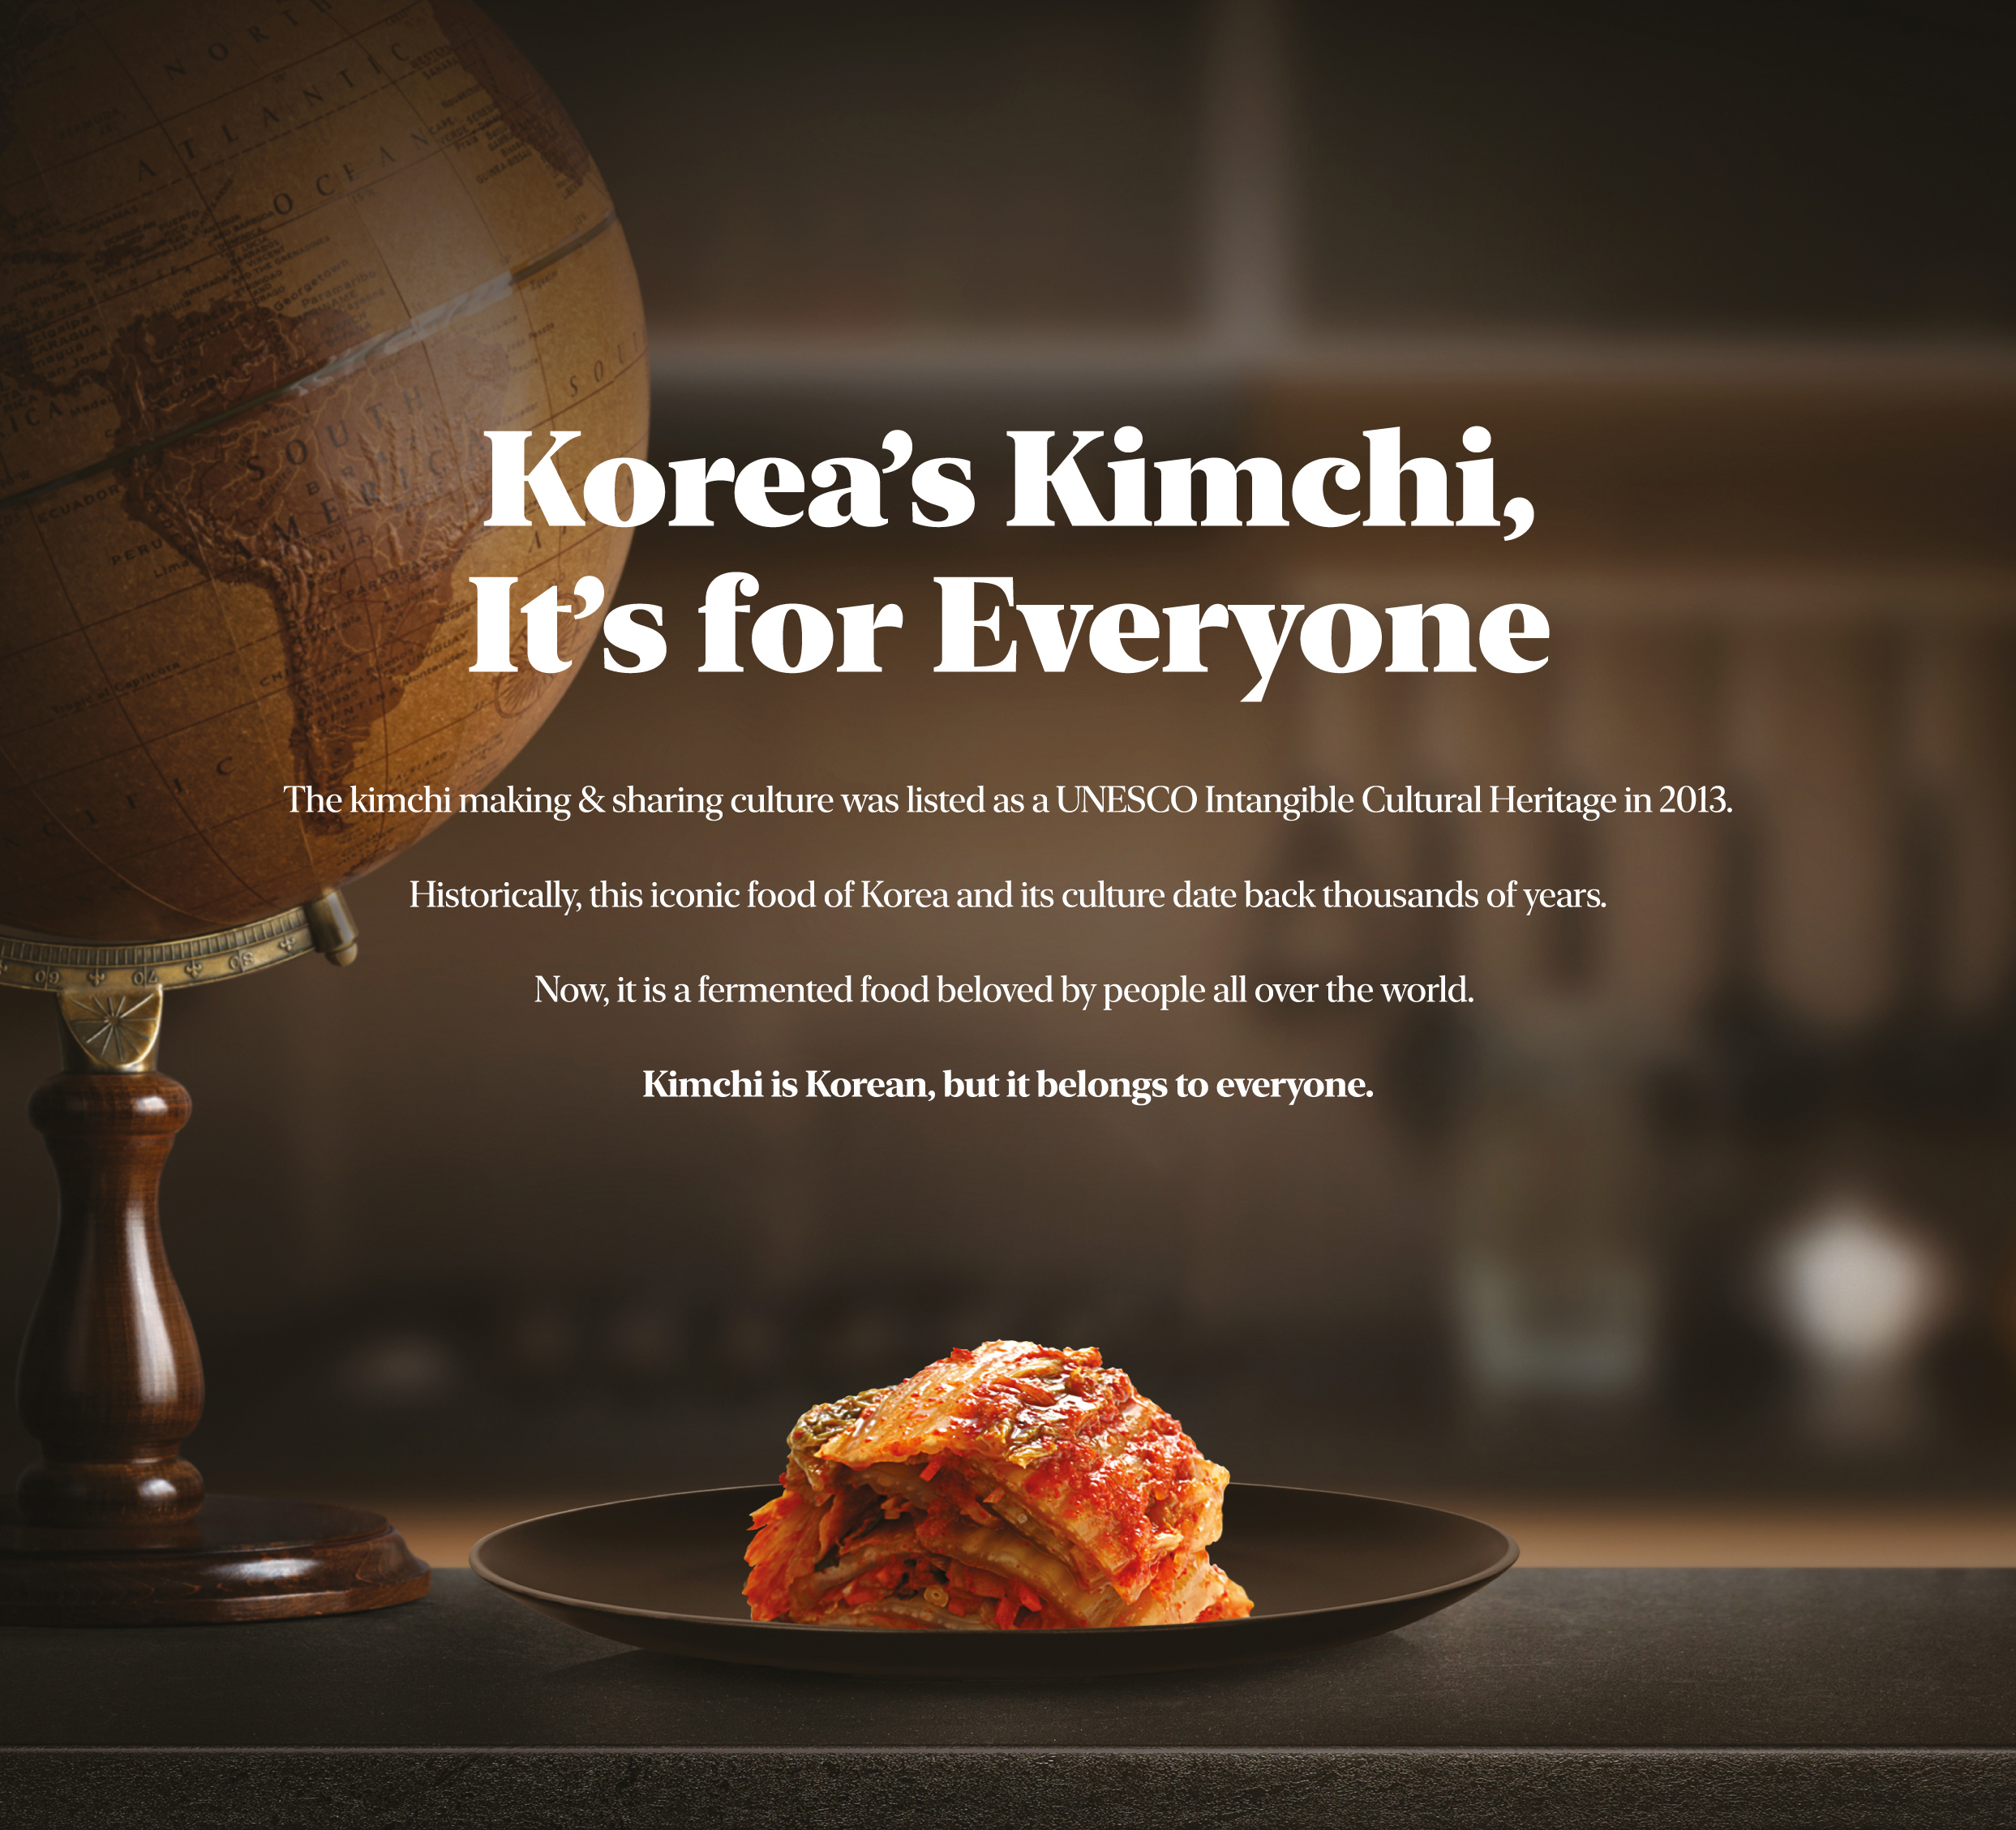 뉴욕타임스에 등장한 김치 광고…서경덕 "中 김치 공정에 팩트로 대응"